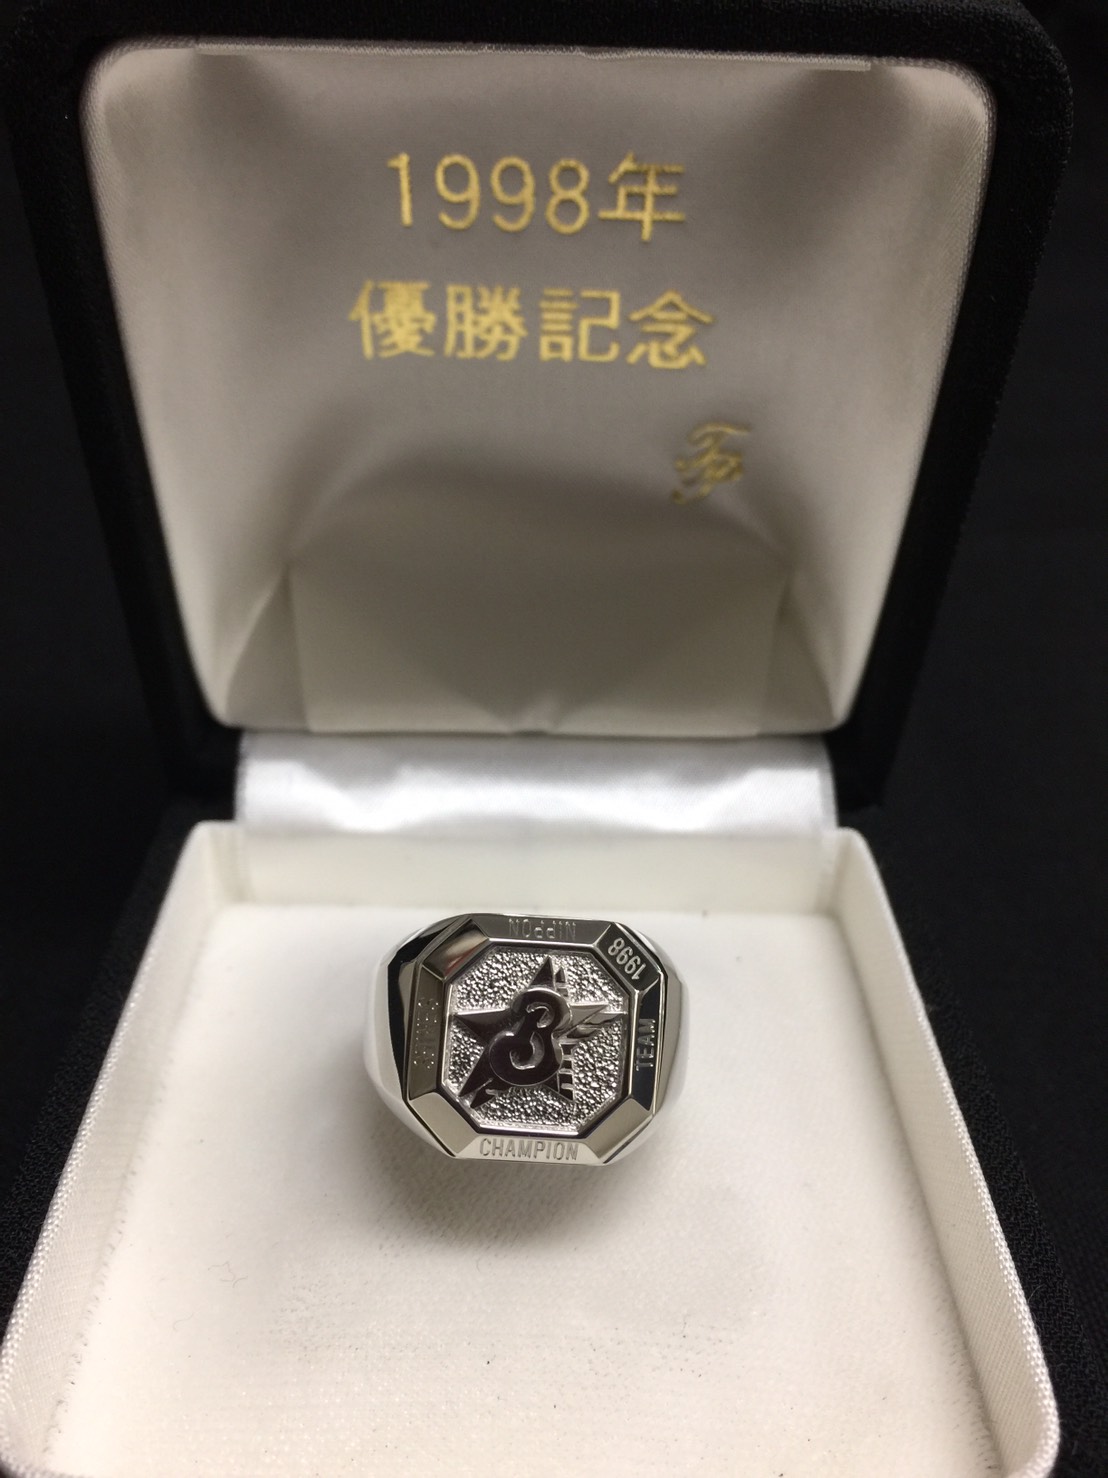 横浜ベイスターズ 1998年 優勝記念 チャンピオンズリング 56pt900 刻印 